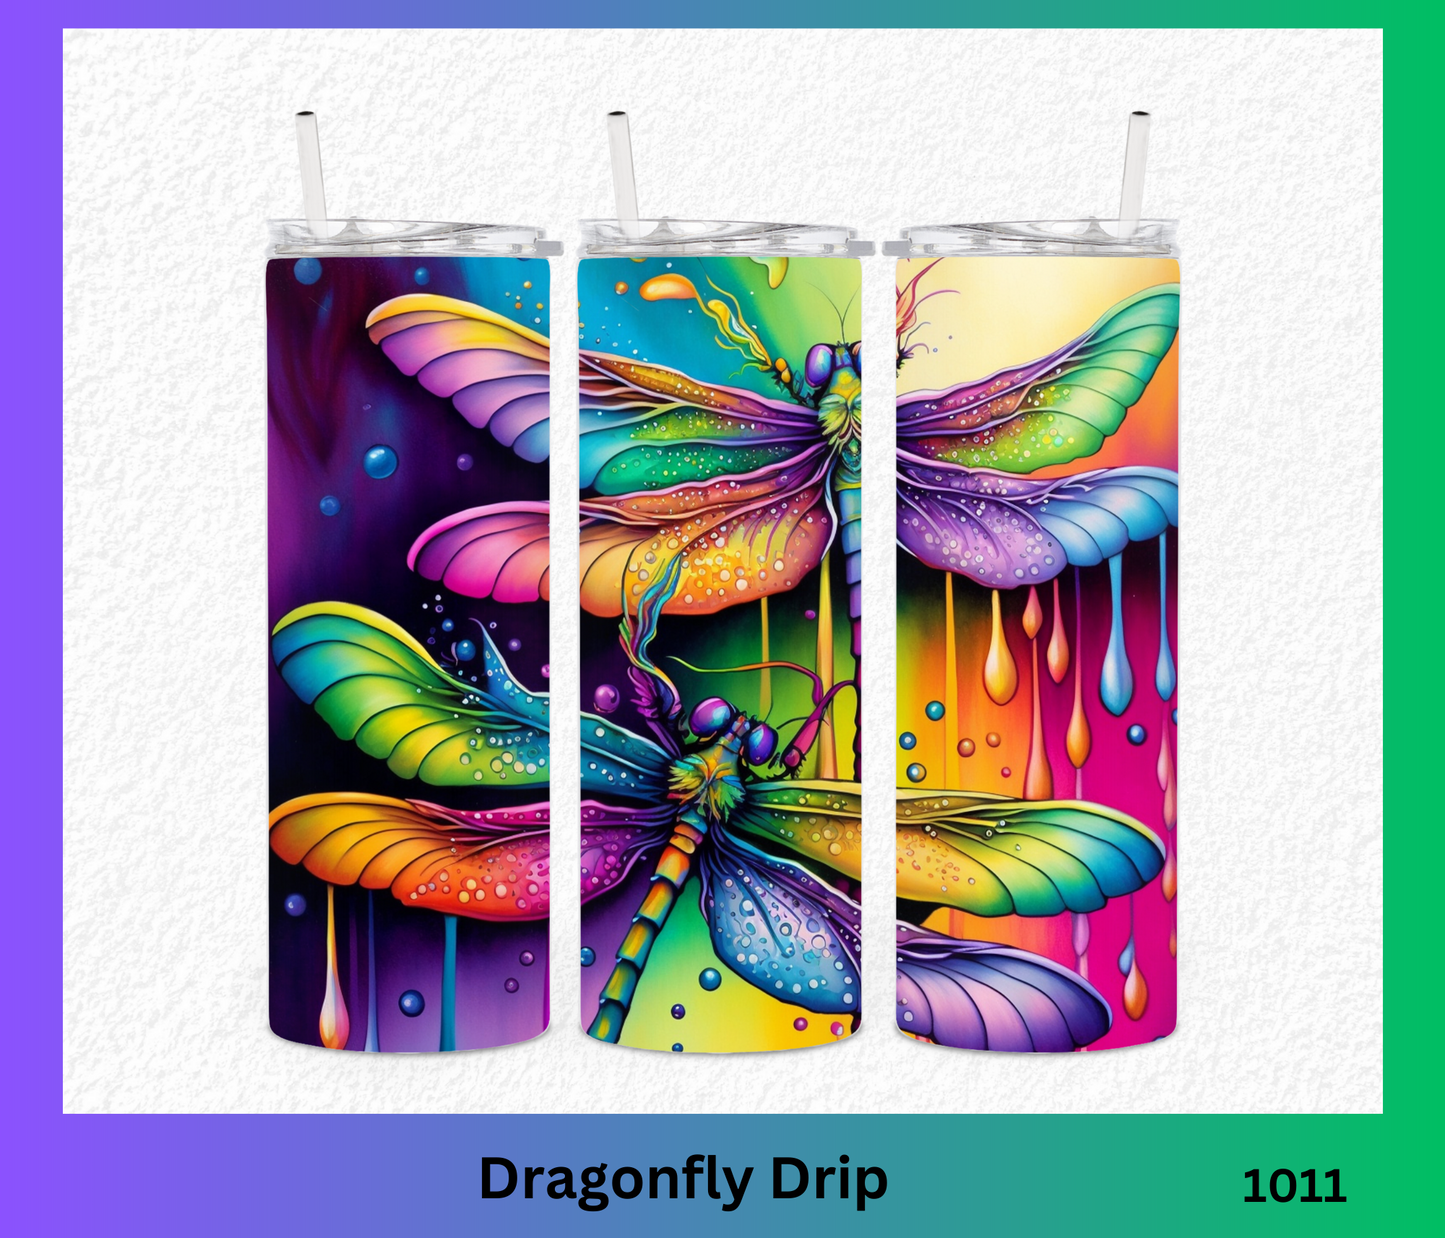 Dragonfly Drip